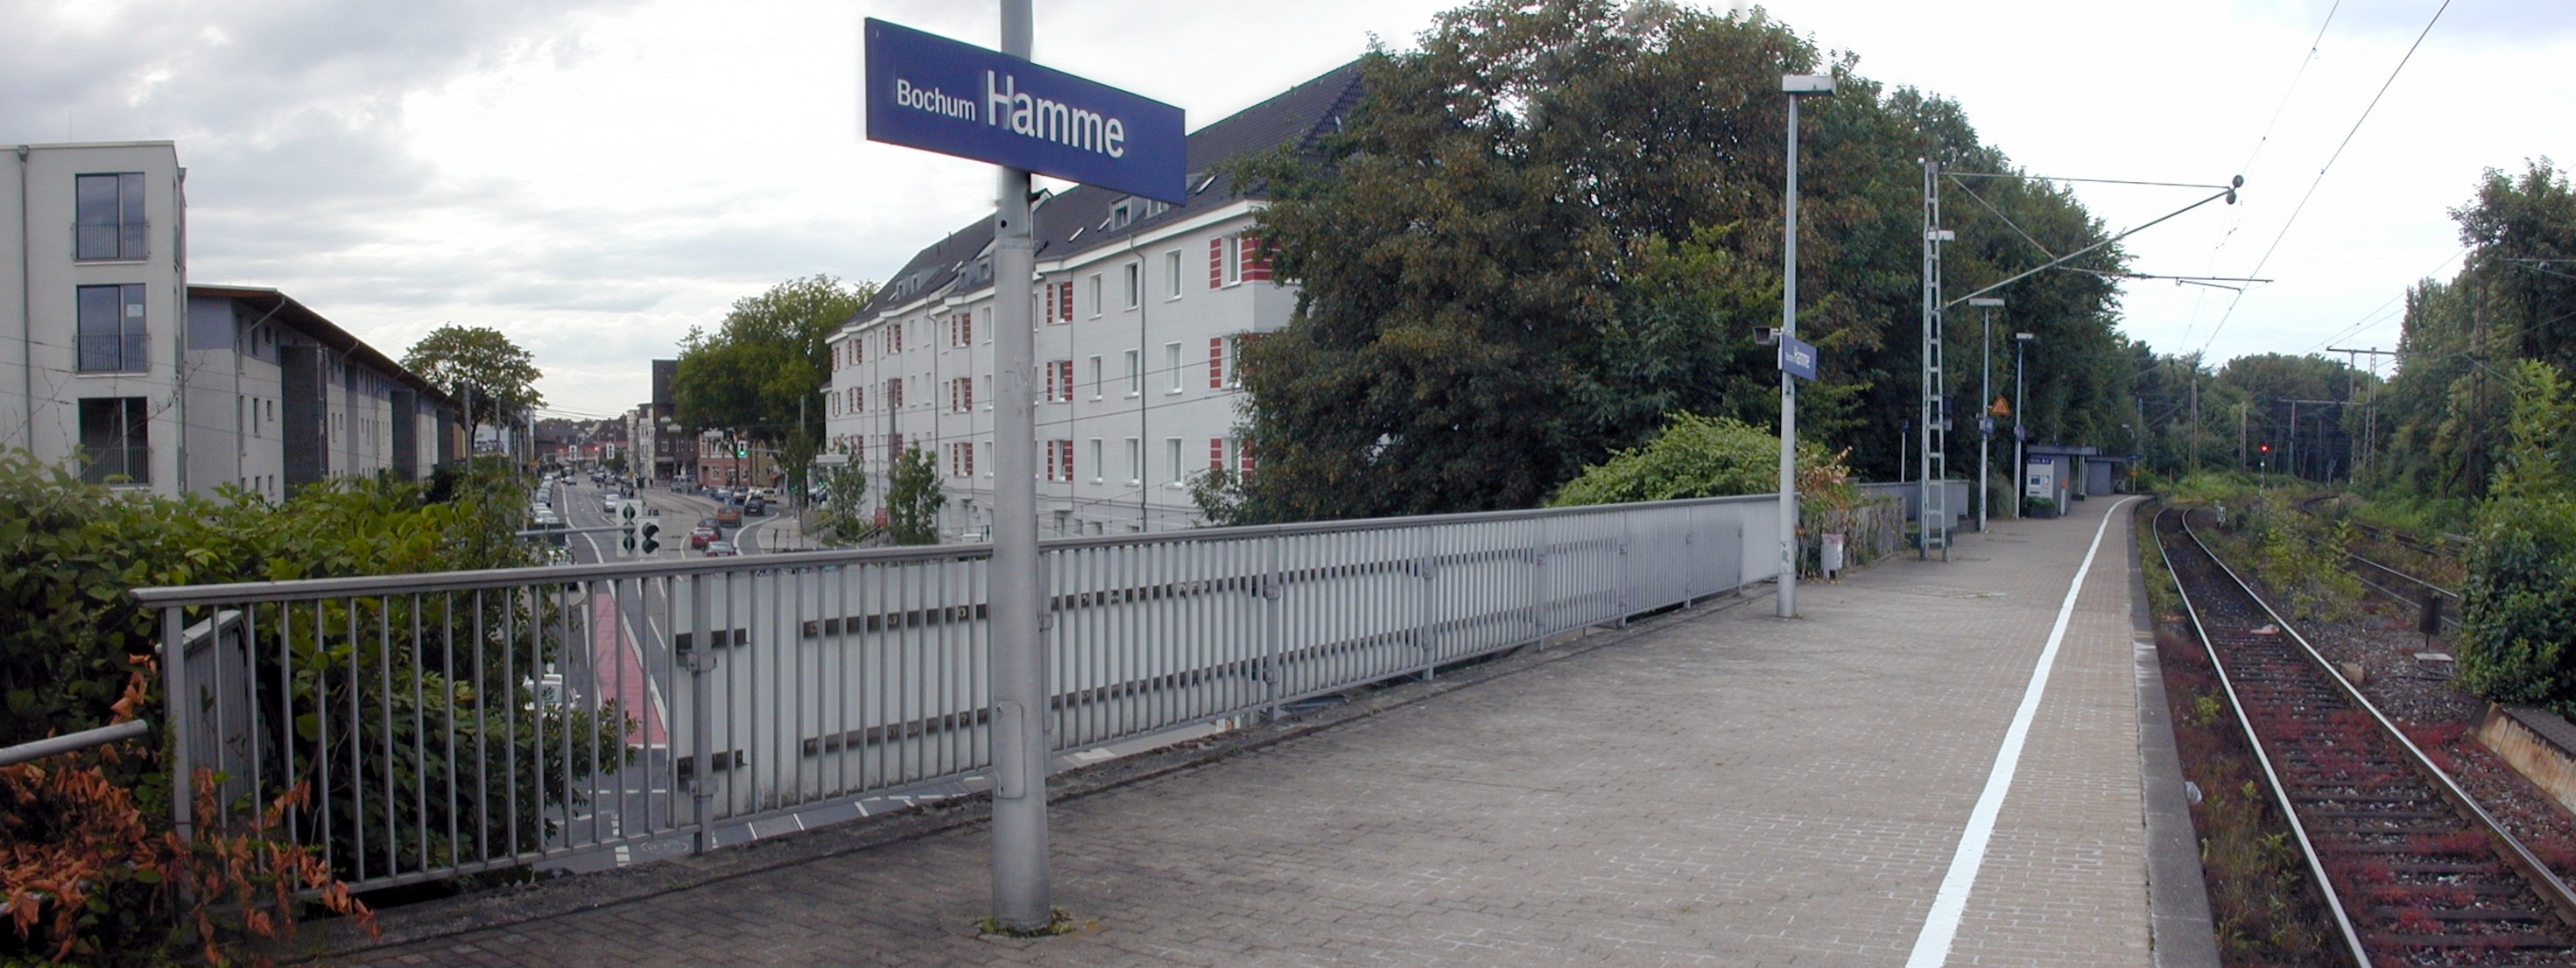 Bochum | Utazási információk | railcc